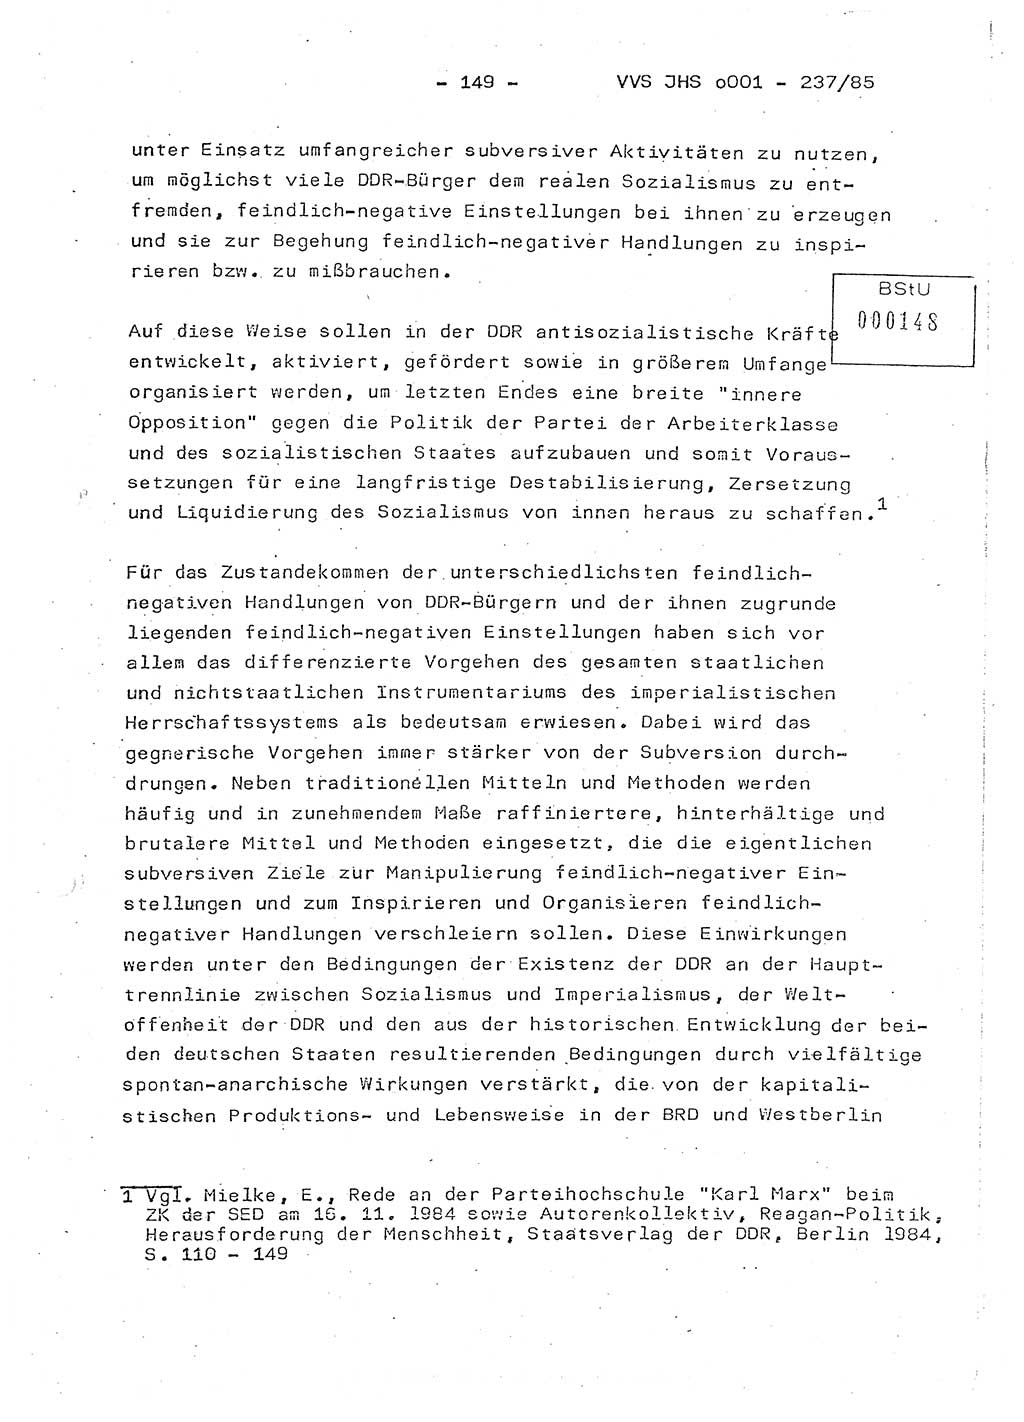 Dissertation Oberstleutnant Peter Jakulski (JHS), Oberstleutnat Christian Rudolph (HA Ⅸ), Major Horst Böttger (ZMD), Major Wolfgang Grüneberg (JHS), Major Albert Meutsch (JHS), Ministerium für Staatssicherheit (MfS) [Deutsche Demokratische Republik (DDR)], Juristische Hochschule (JHS), Vertrauliche Verschlußsache (VVS) o001-237/85, Potsdam 1985, Seite 149 (Diss. MfS DDR JHS VVS o001-237/85 1985, S. 149)